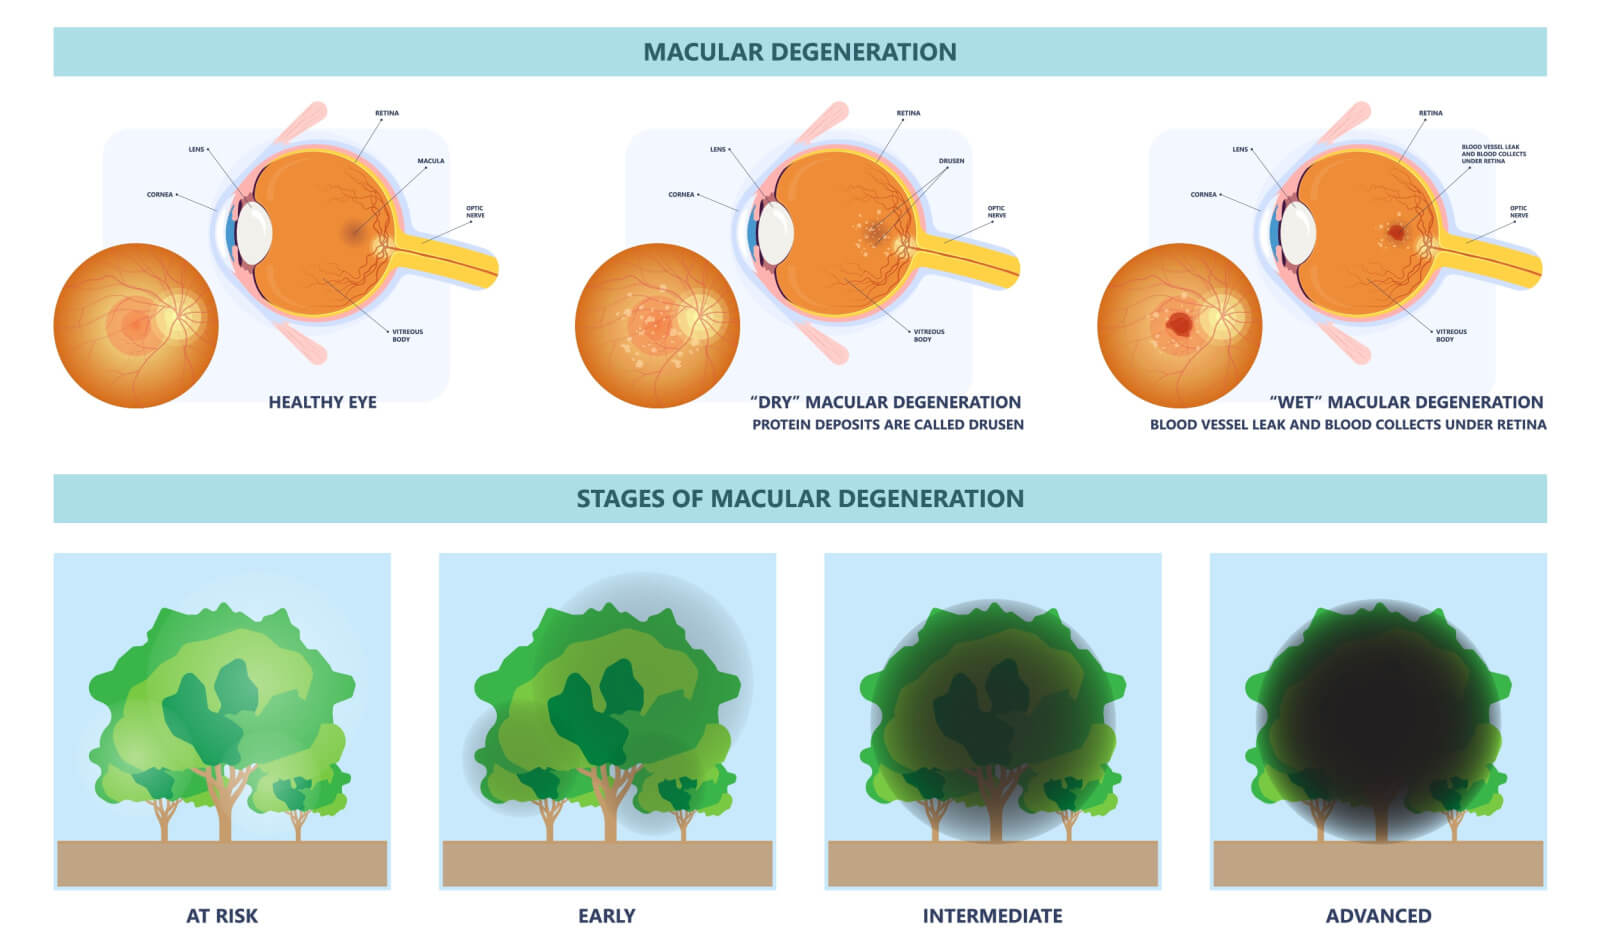 Image explaining macular degeneration. 